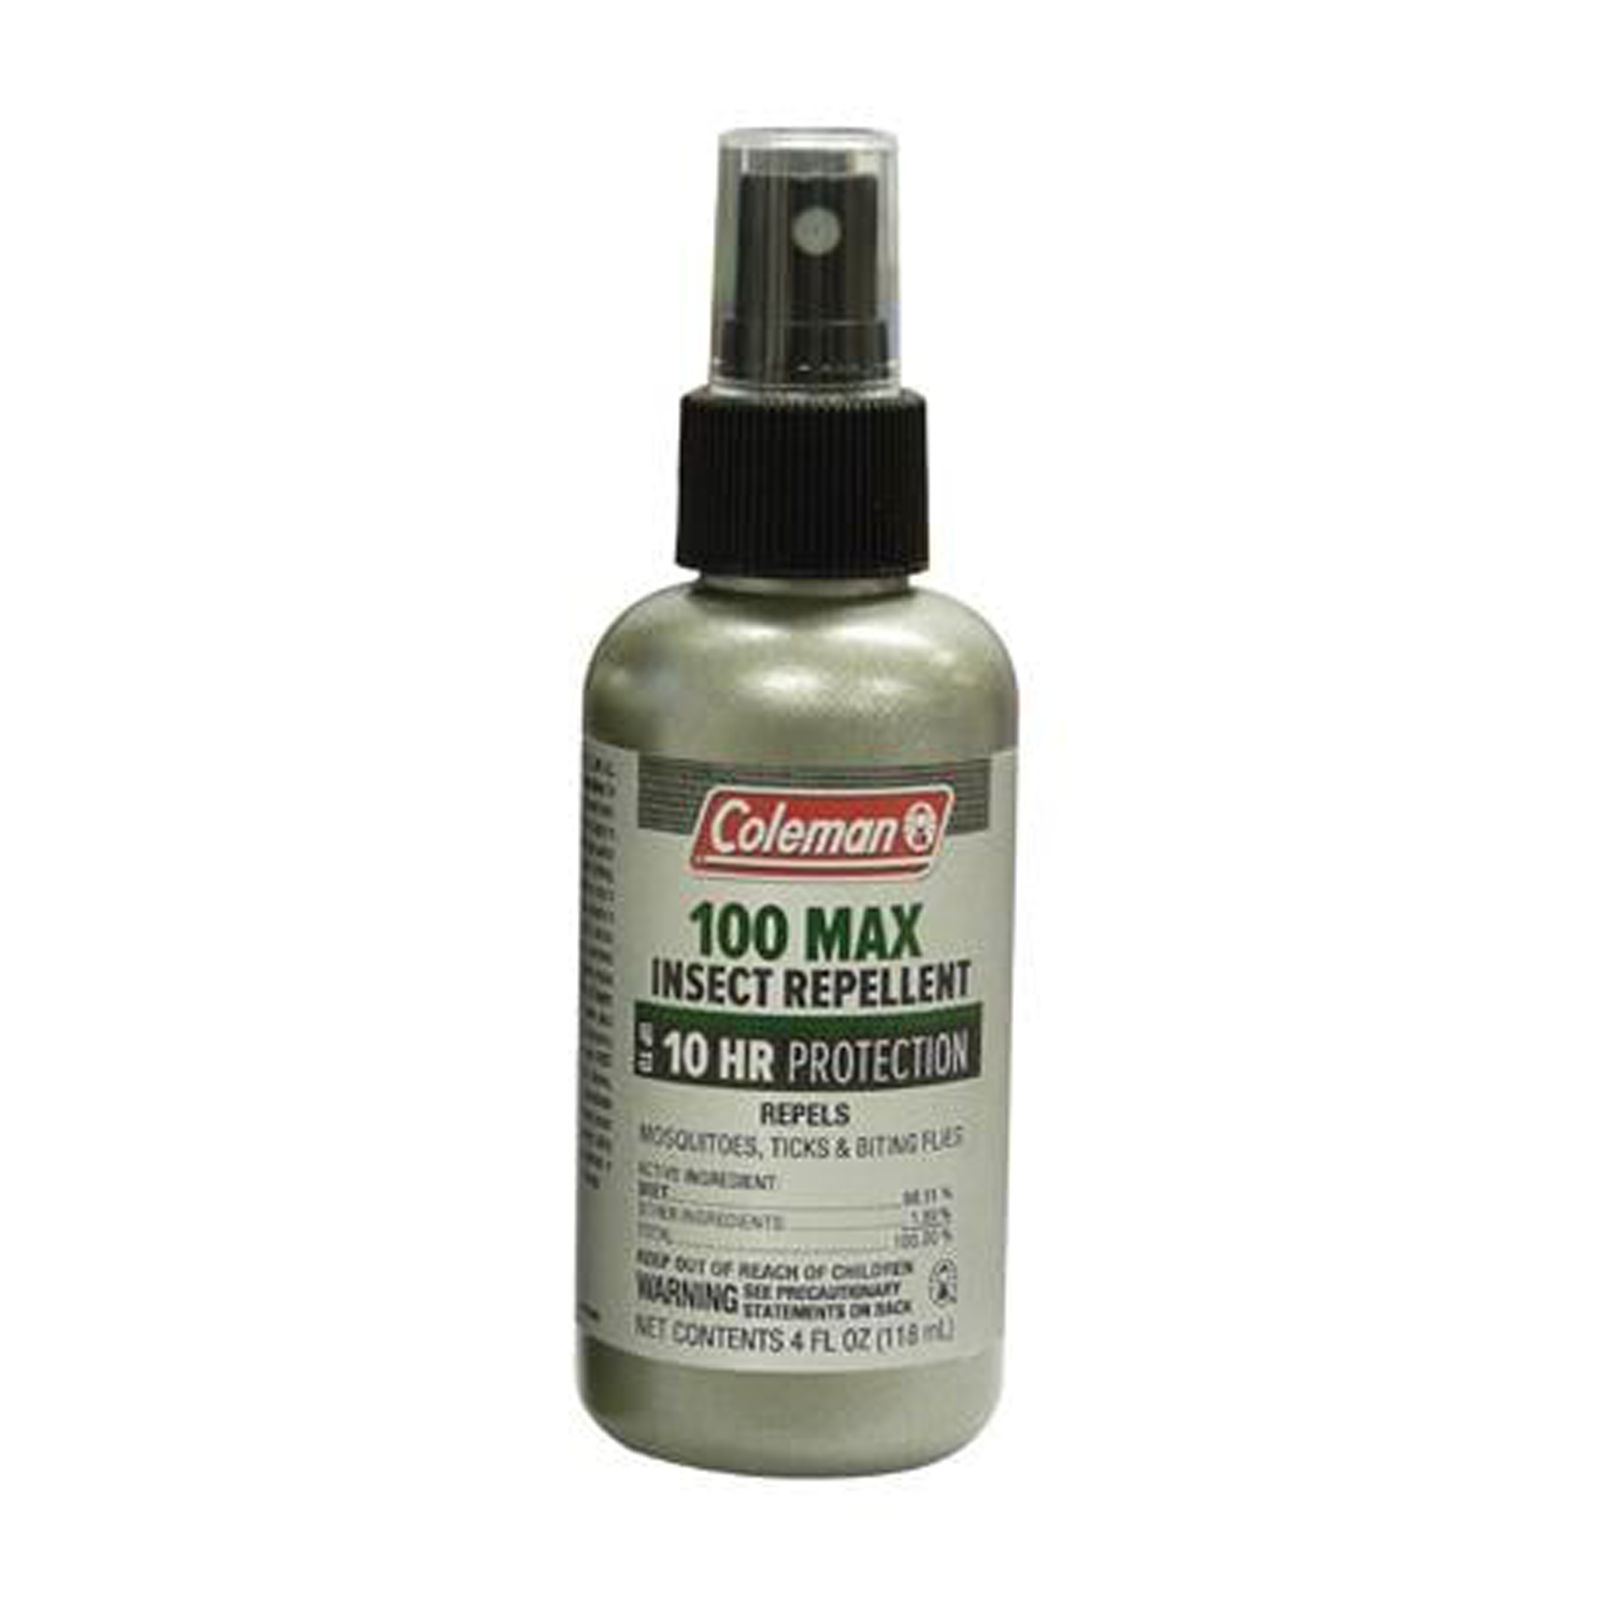 Coleman Max 100 Percent Deet Insect Repellent, 4 Oz Pump Spray - image 1 of 6